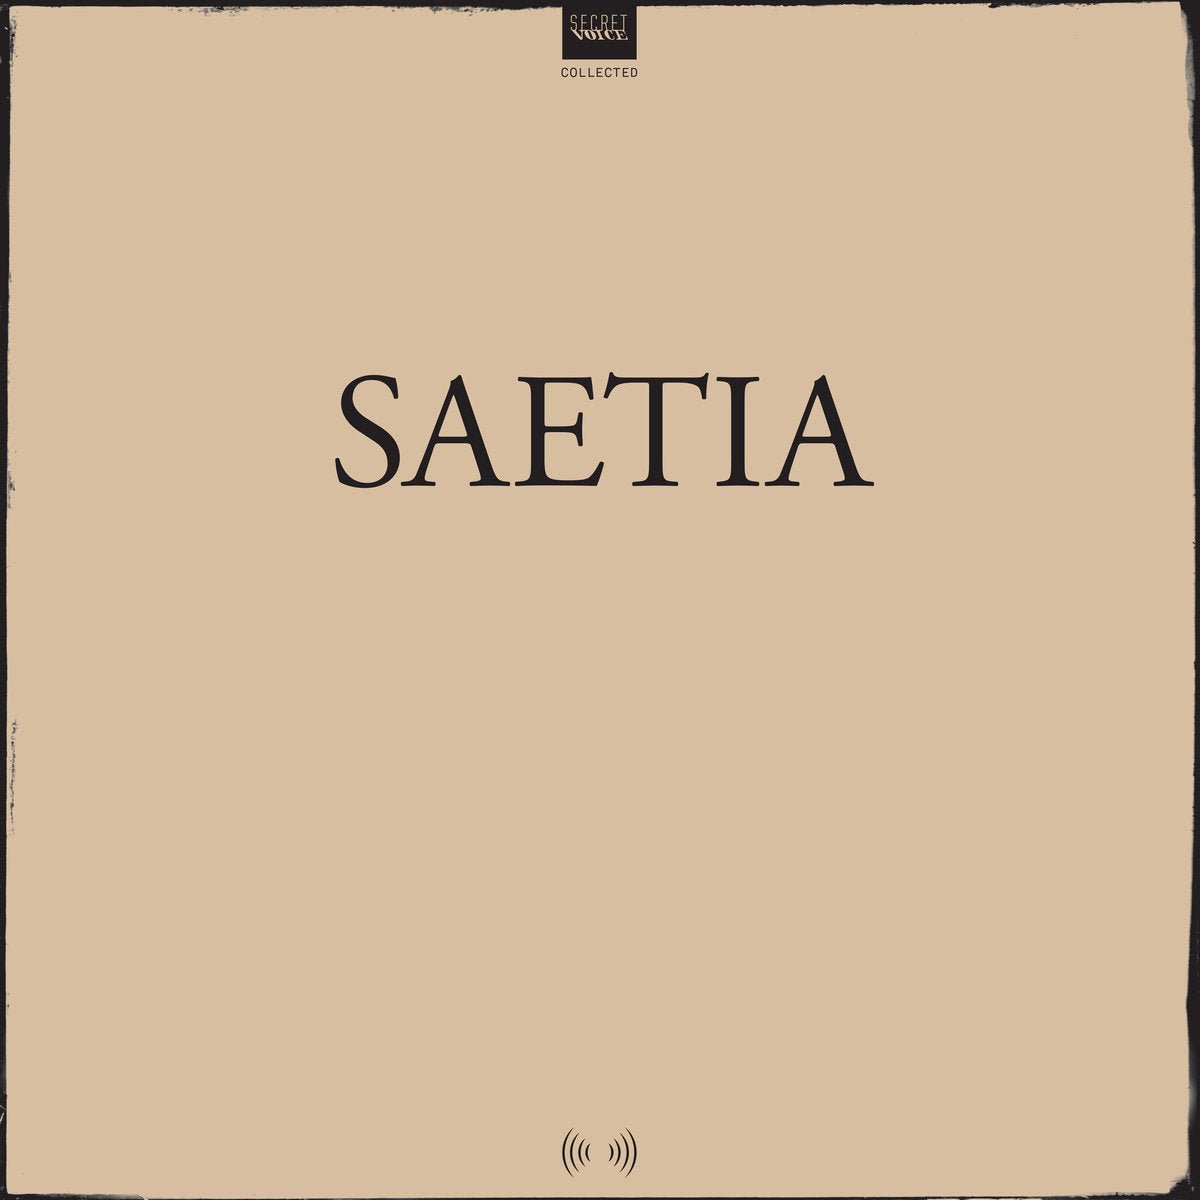 Saetia - Collected LP - Vinyl - Secret Voice